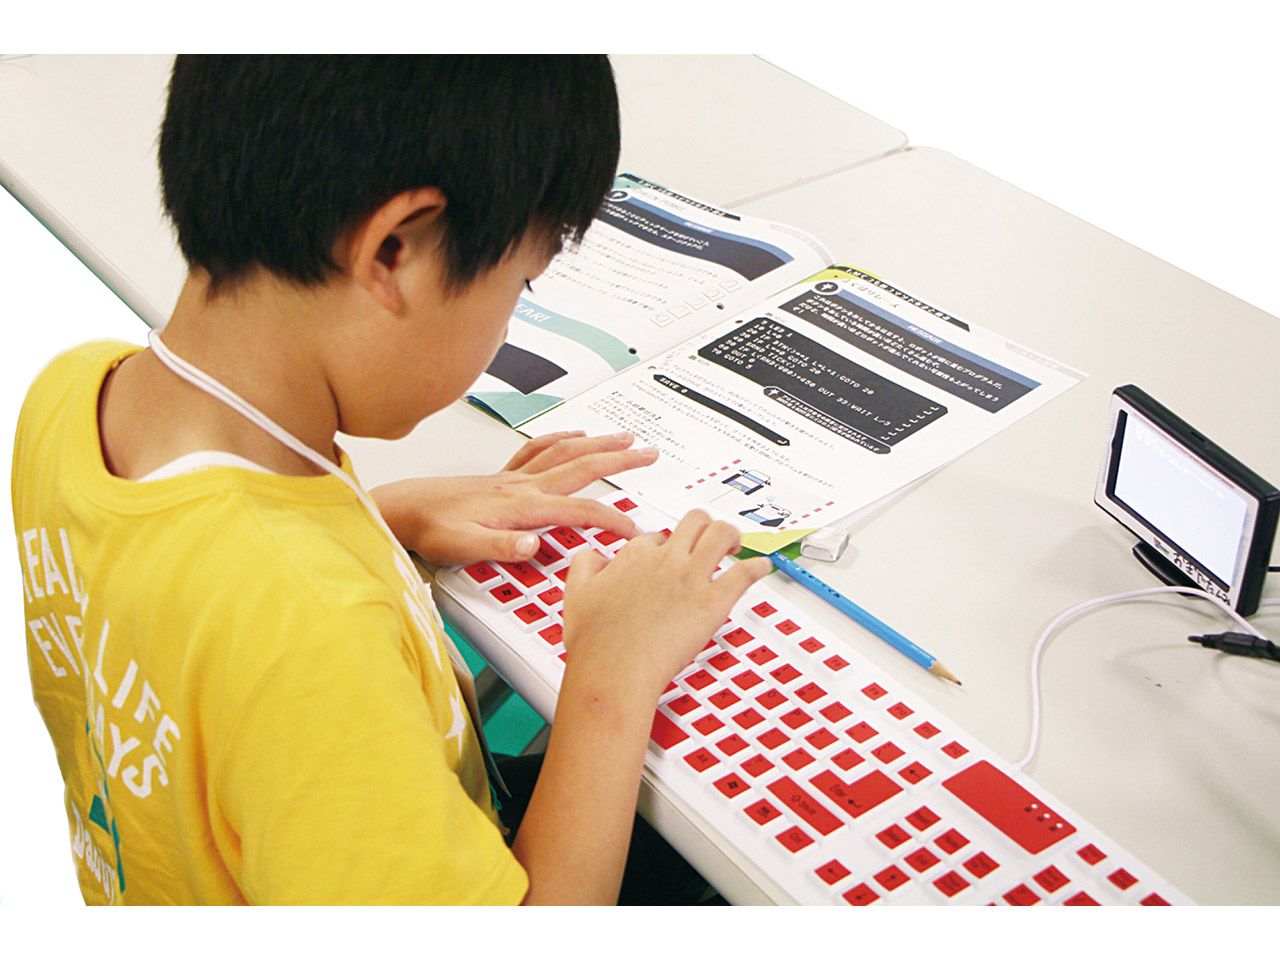 タミヤロボットスクール - ONE　横浜生麦教室